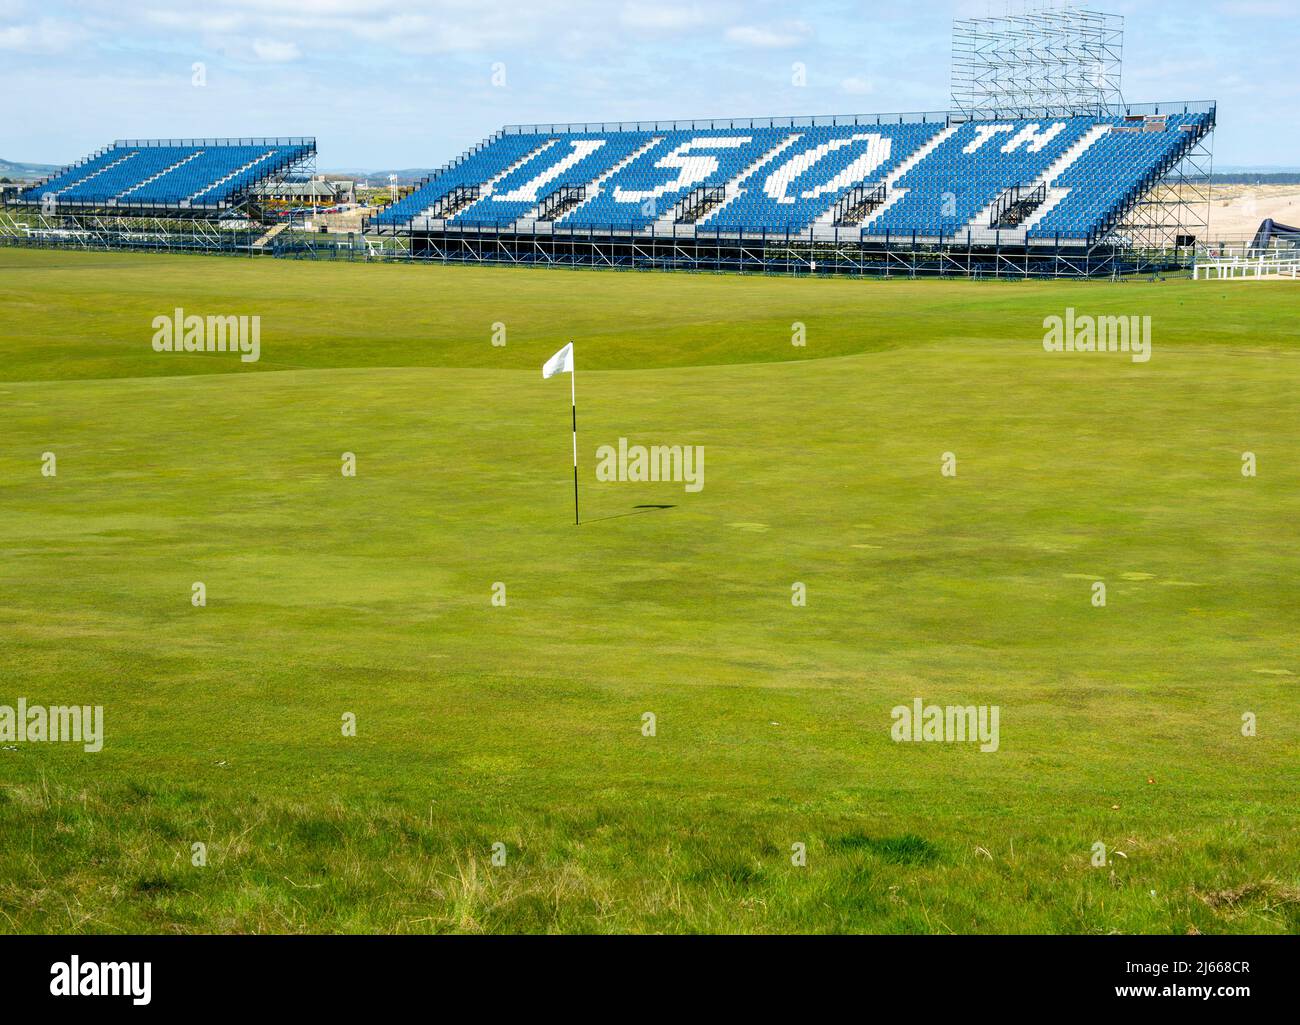 Hay stands temporales con vistas a 18th verdes del Old Course, que acogerá el torneo Open Golf 150th en St Andrews en julio de 2022. Foto de stock